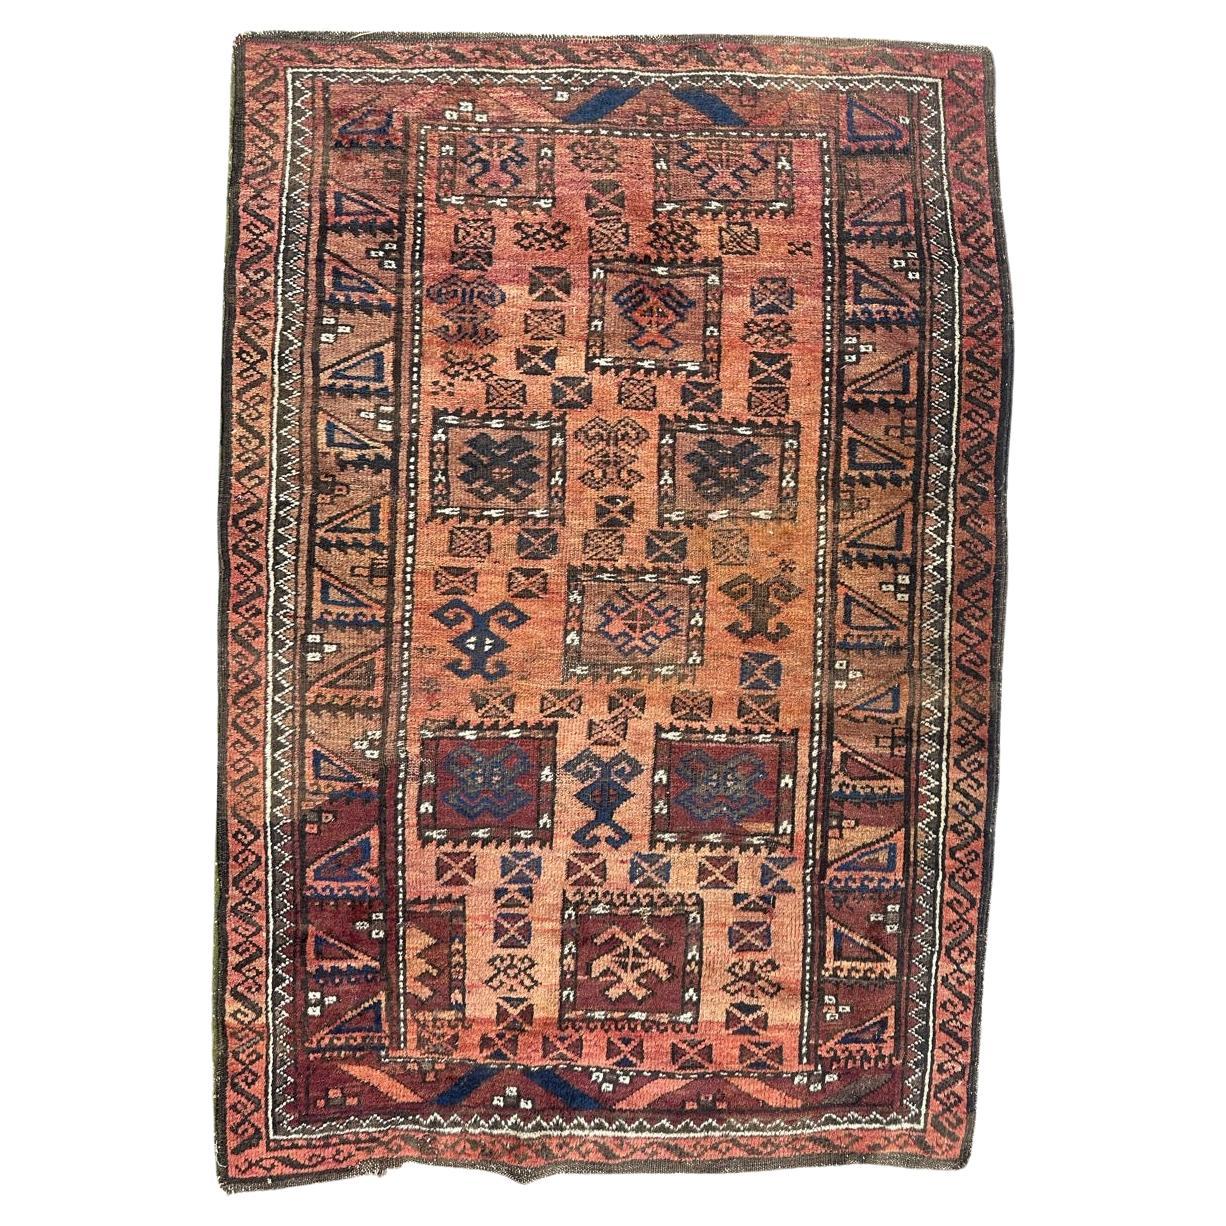 Bobyrug’s nice mid century Turkmen beluch rug